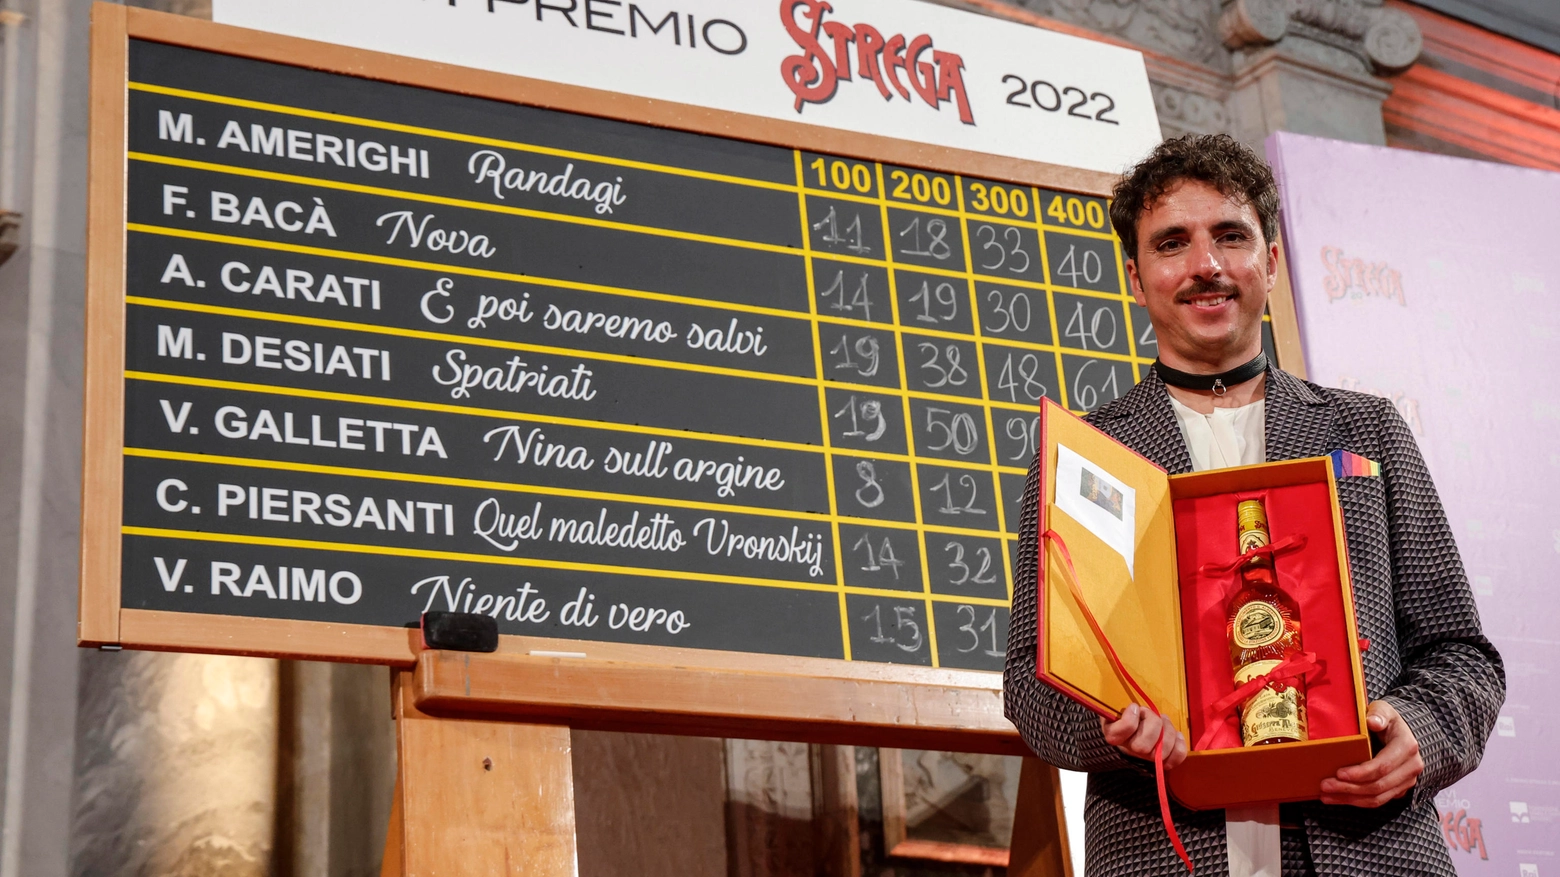 Mario Desiati, vincitore del Premio Strega 2022 con 'Spatriati'